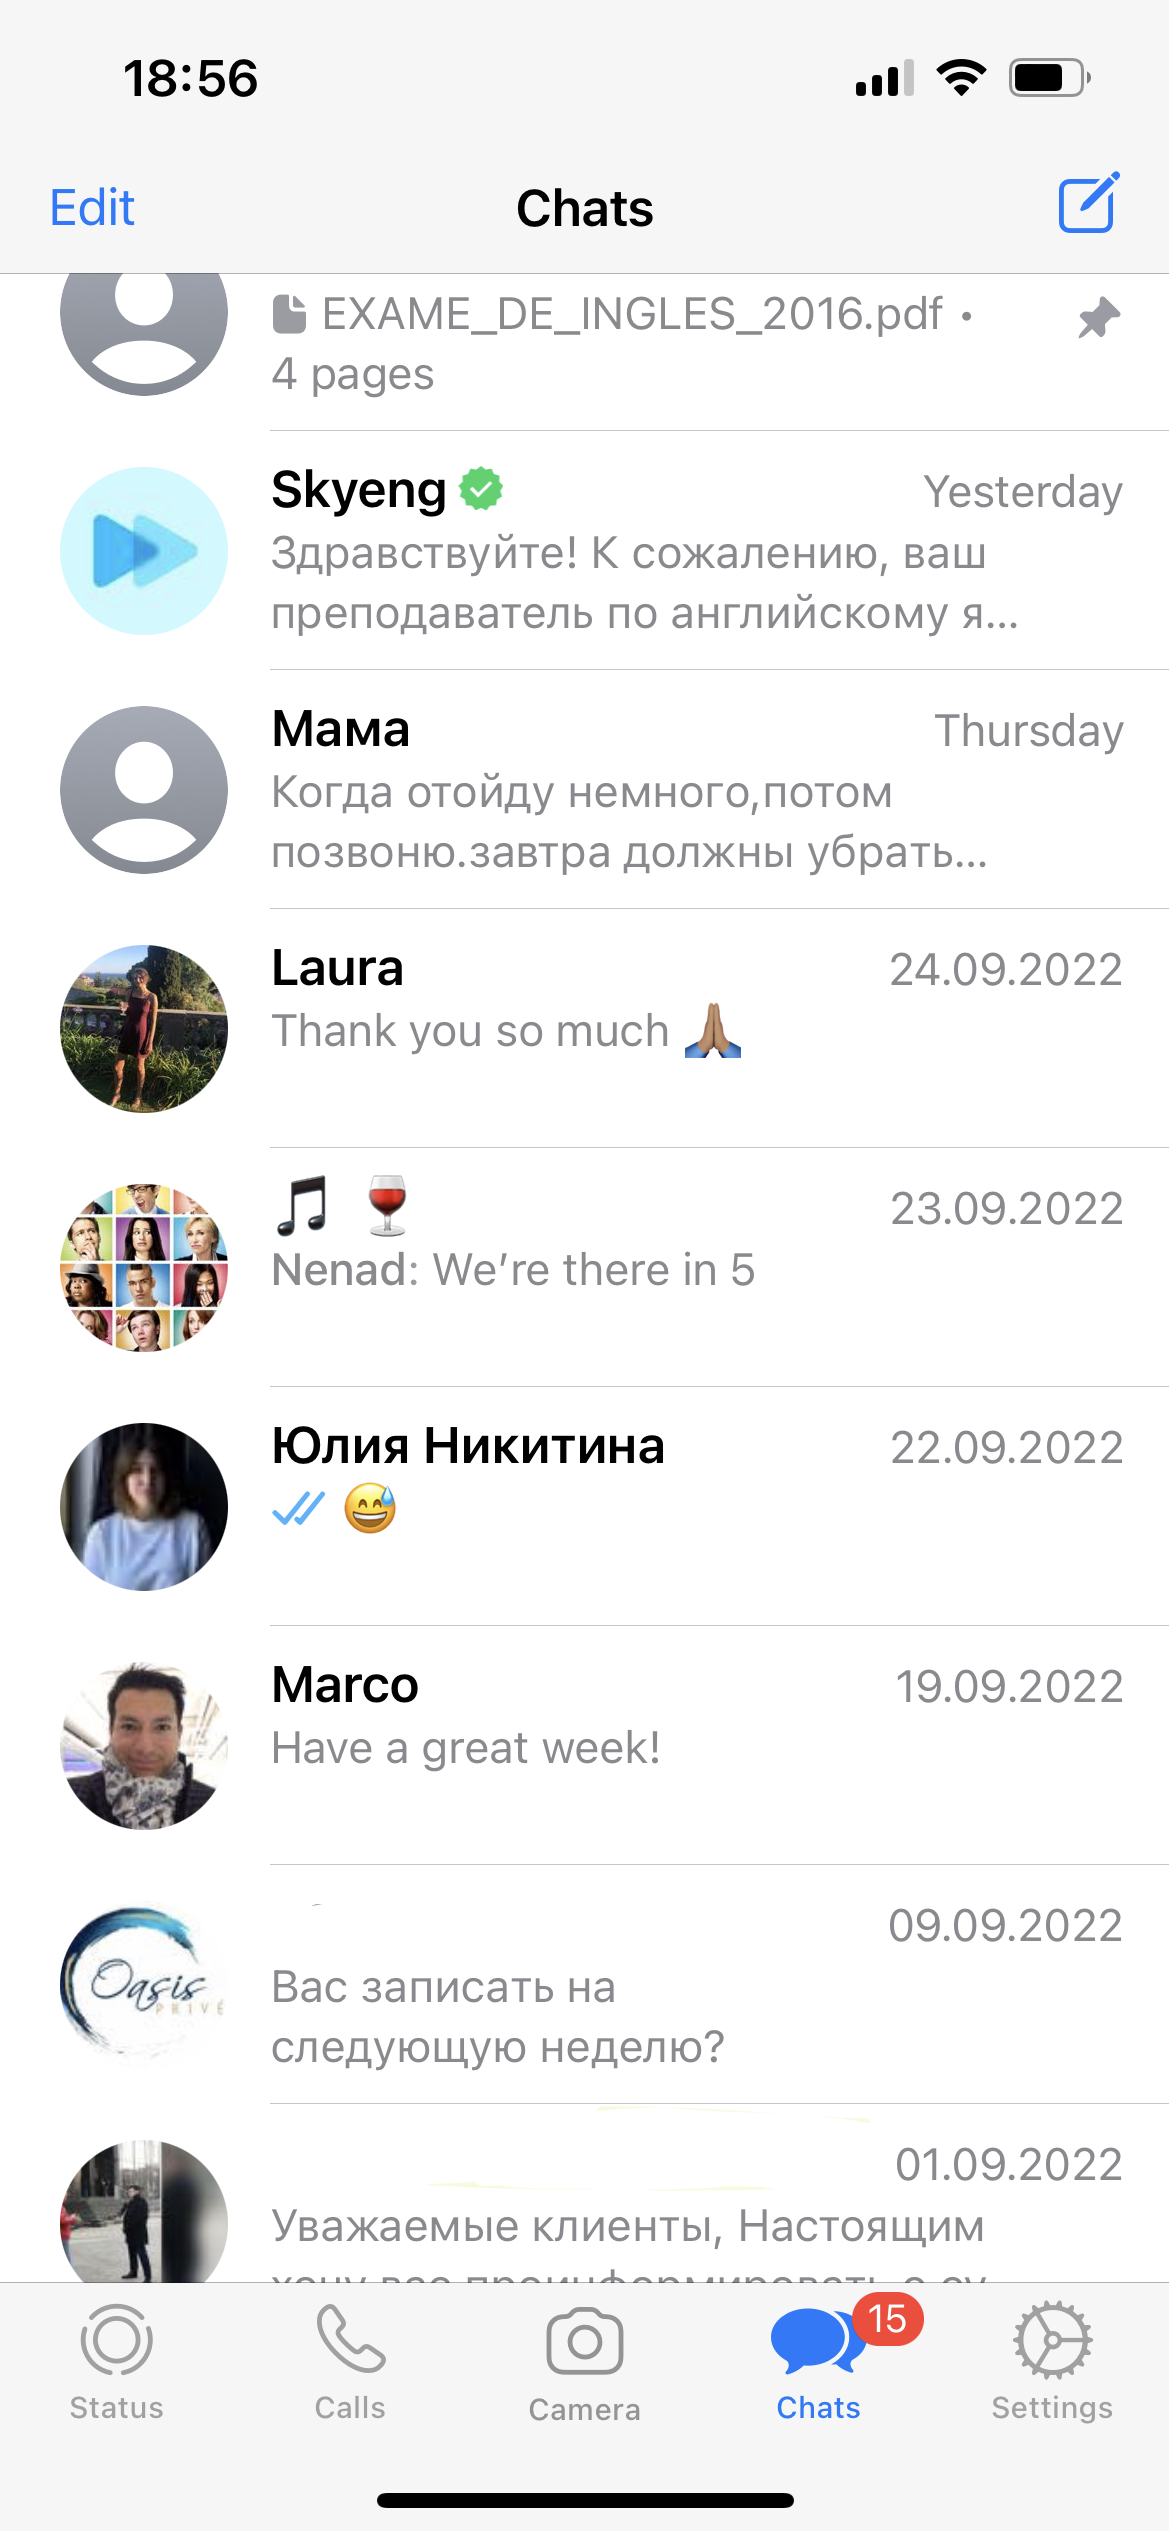 Скриншот окна мессенджера WhatsApp с телефона